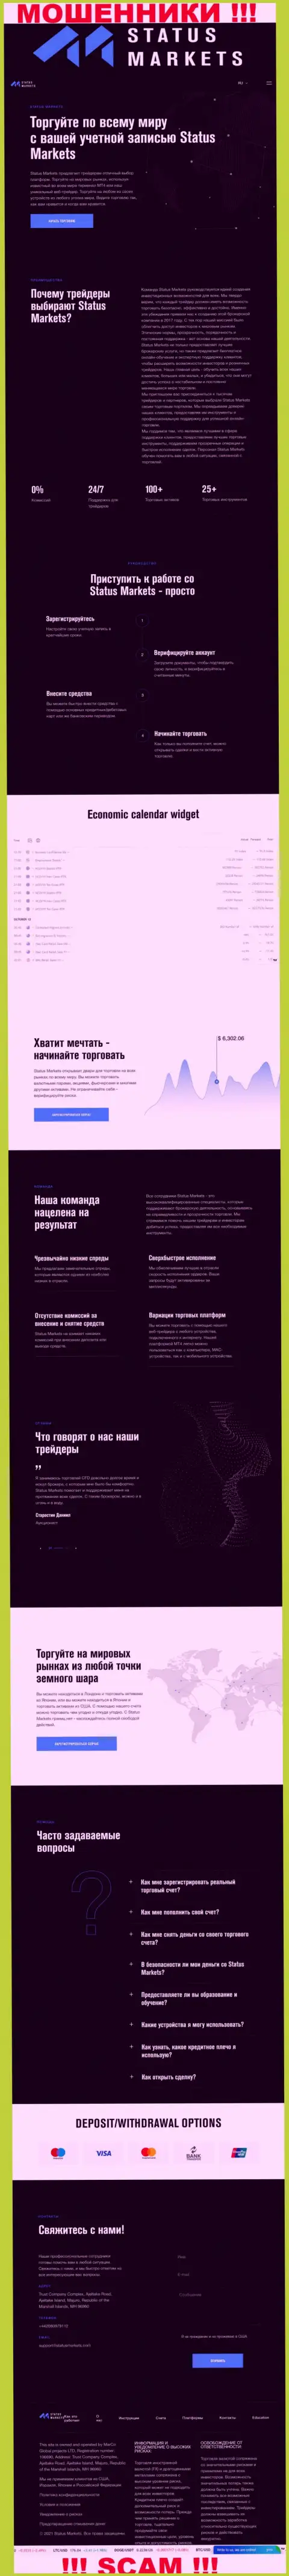 Скриншот официального веб-сервиса жульнической организации Статус Маркетс